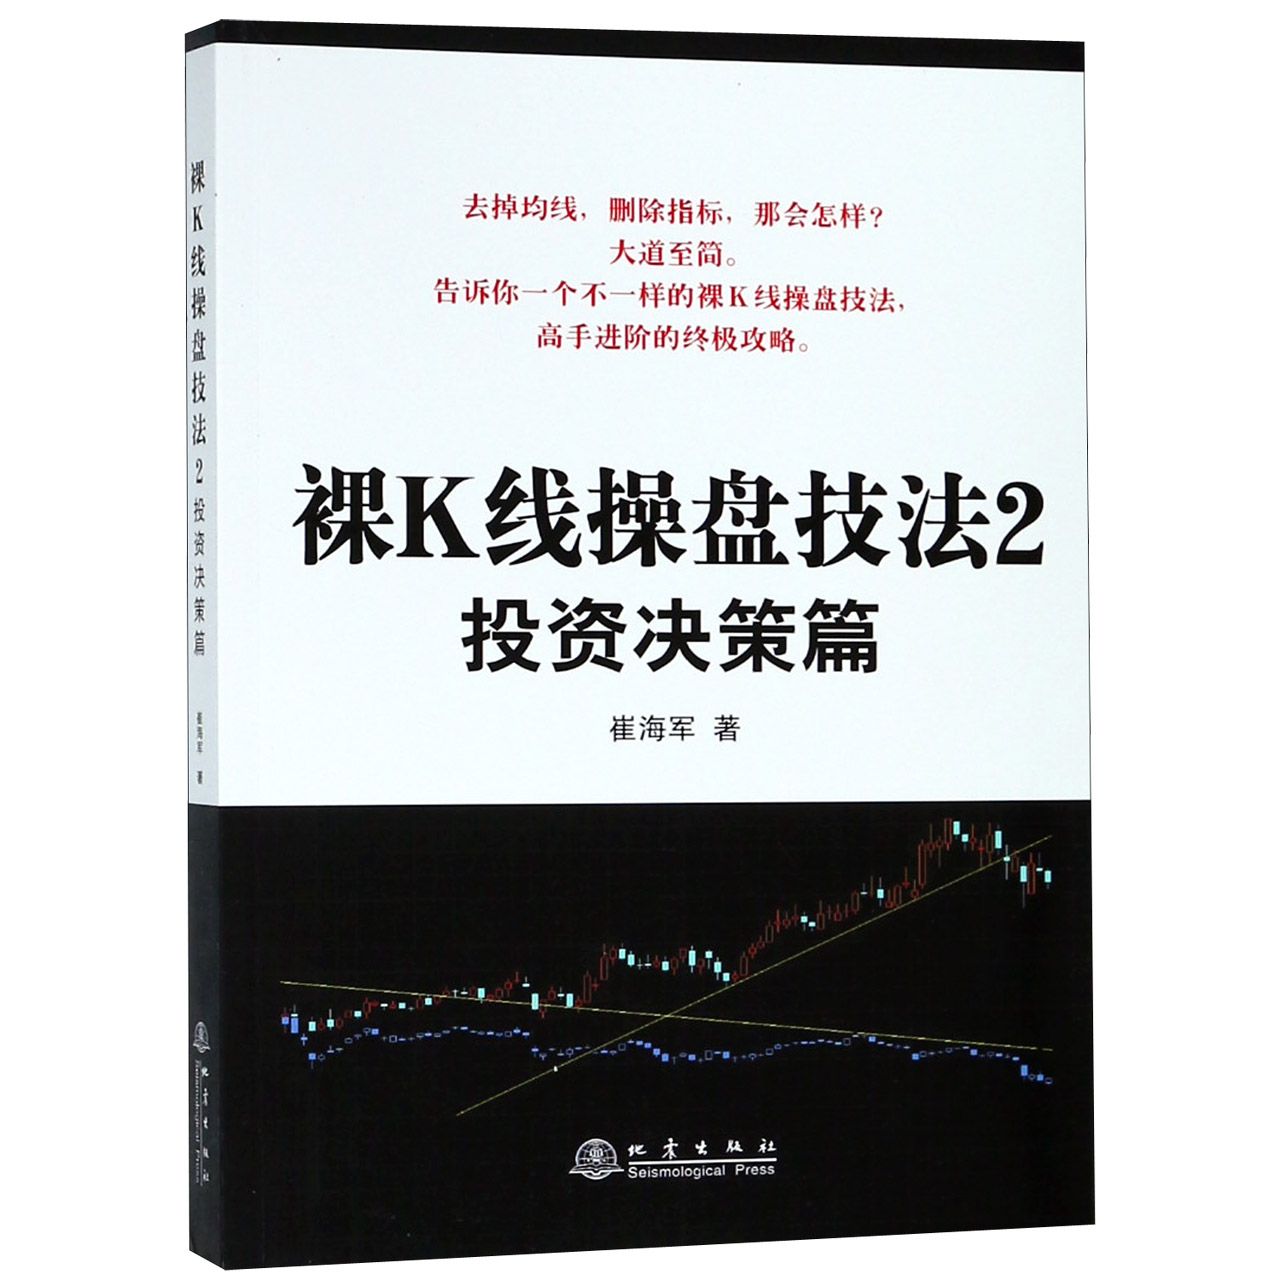 正版图书裸K线操盘技法(2决策篇)崔海军著地震出版社9787502848767